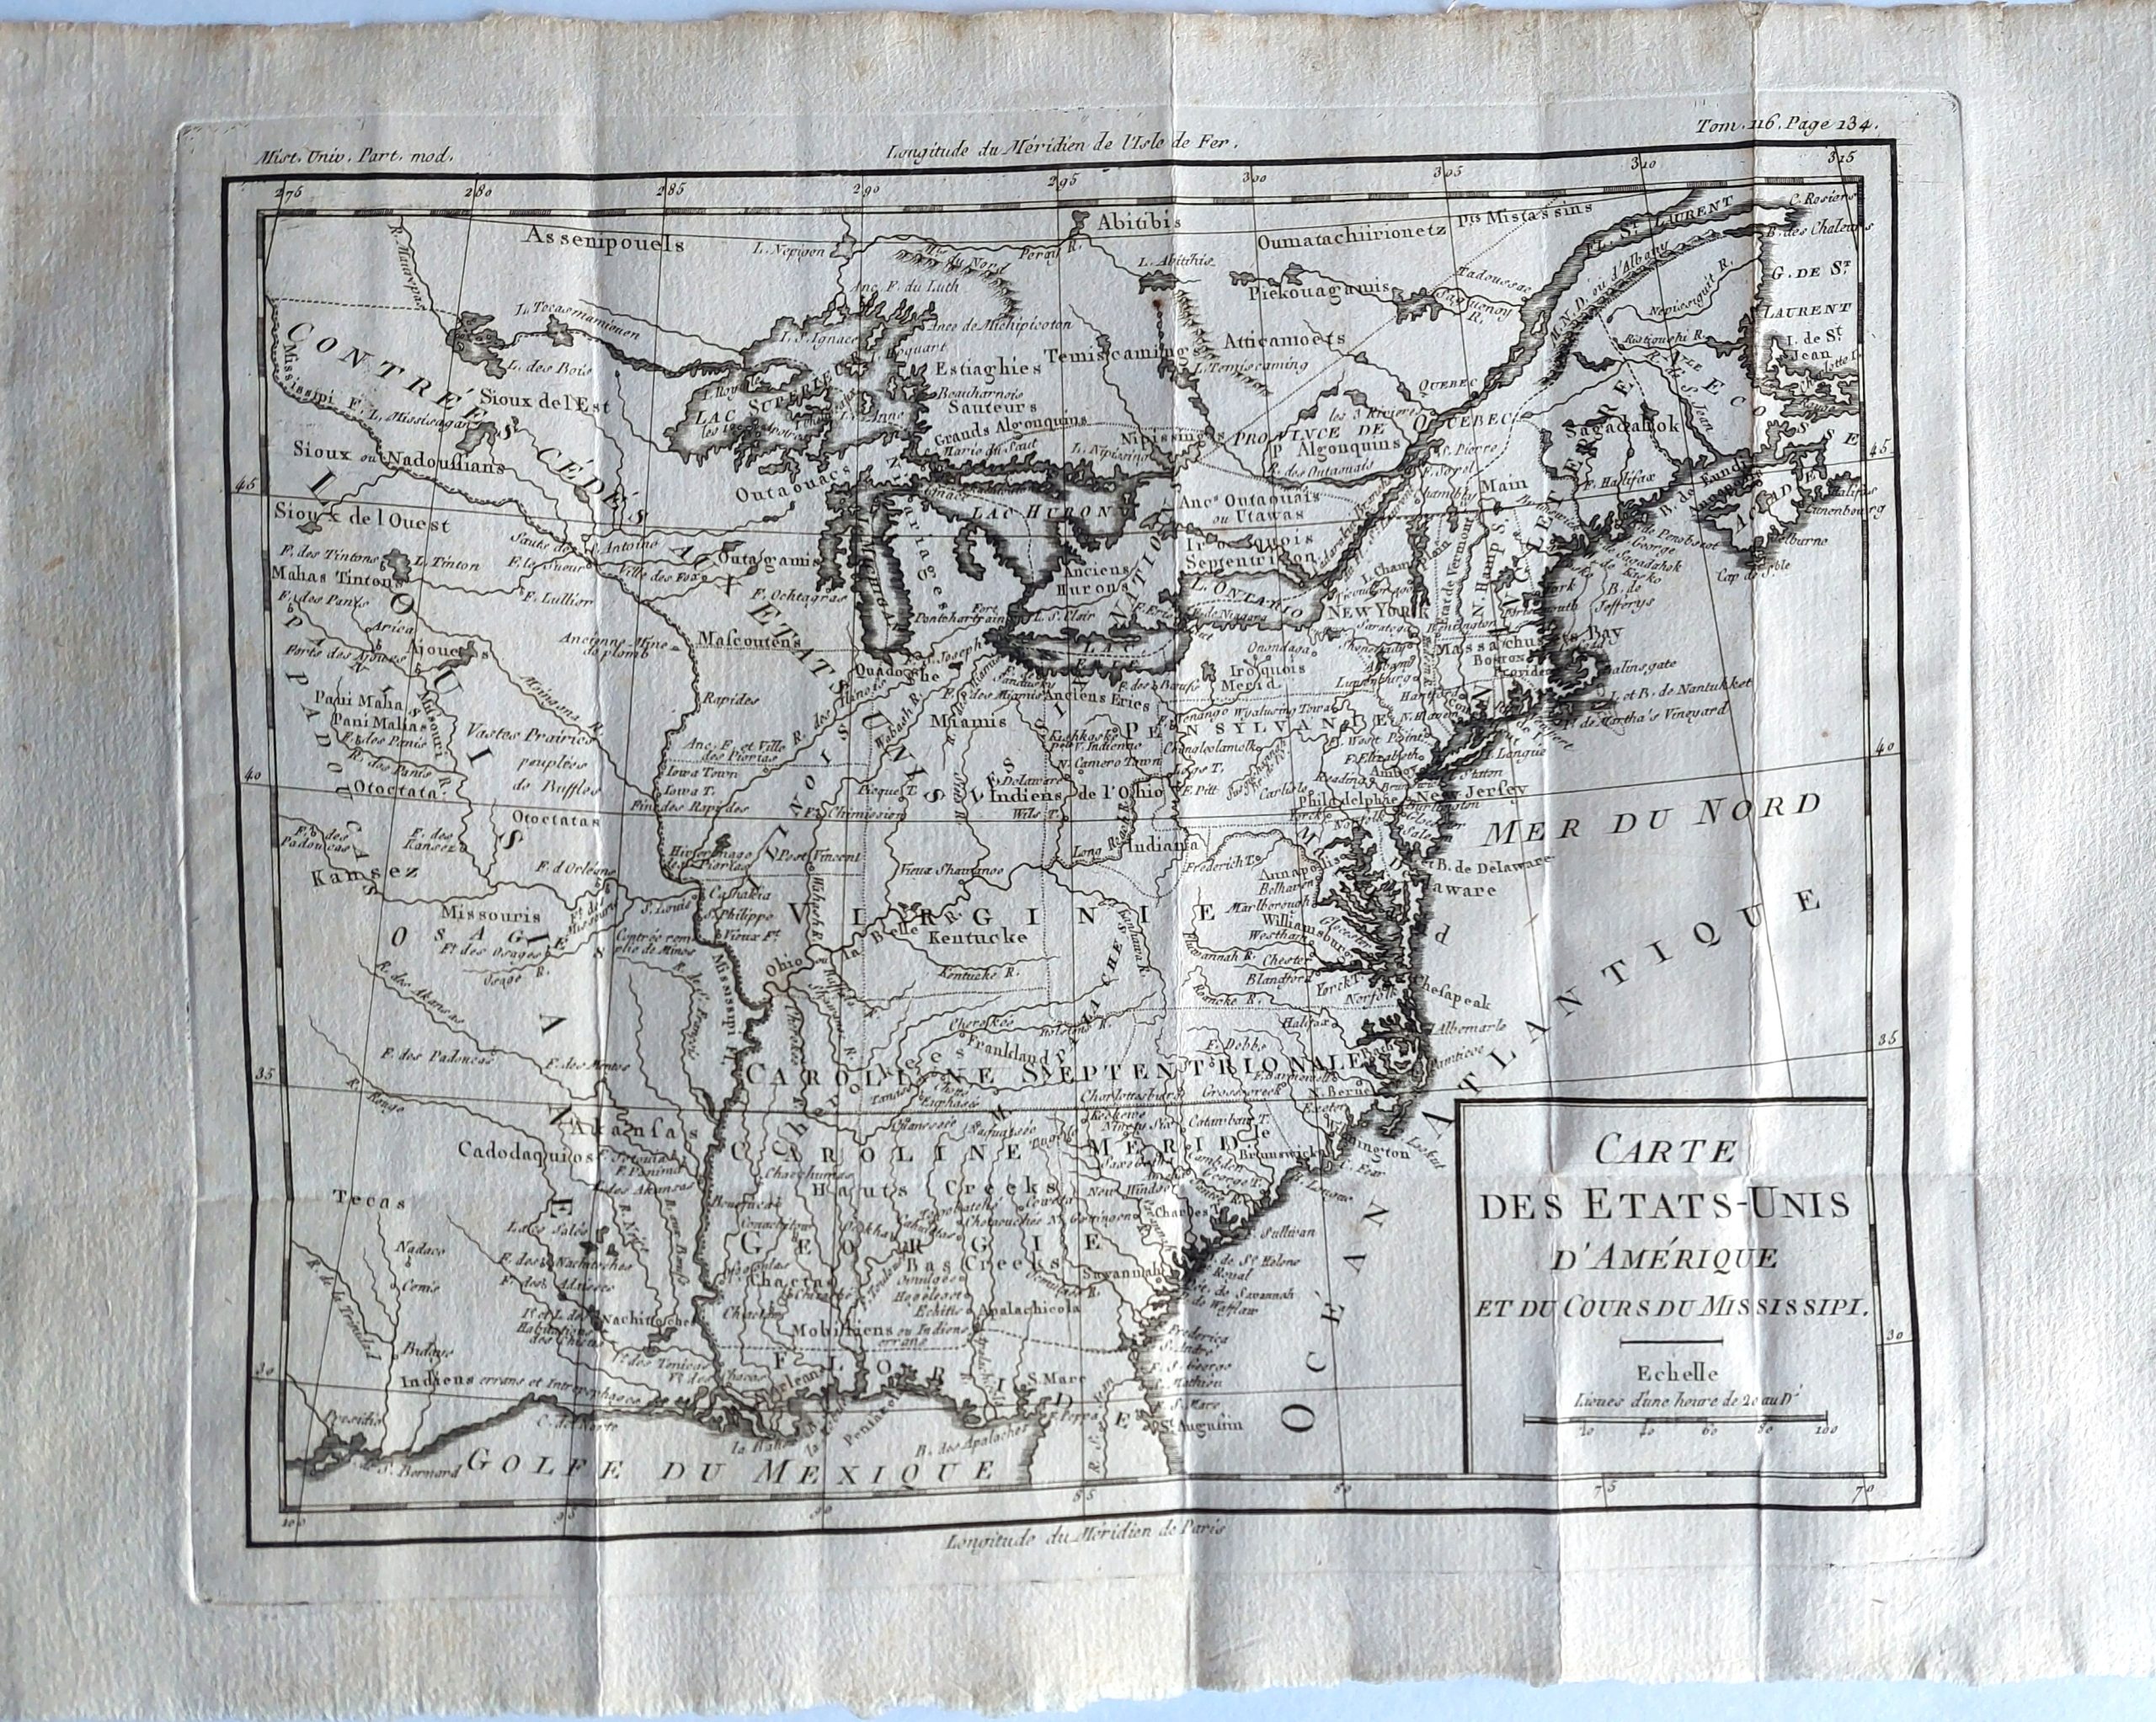 Carte des Etats-Unis d’Amerique et du Cours du Mississipi.